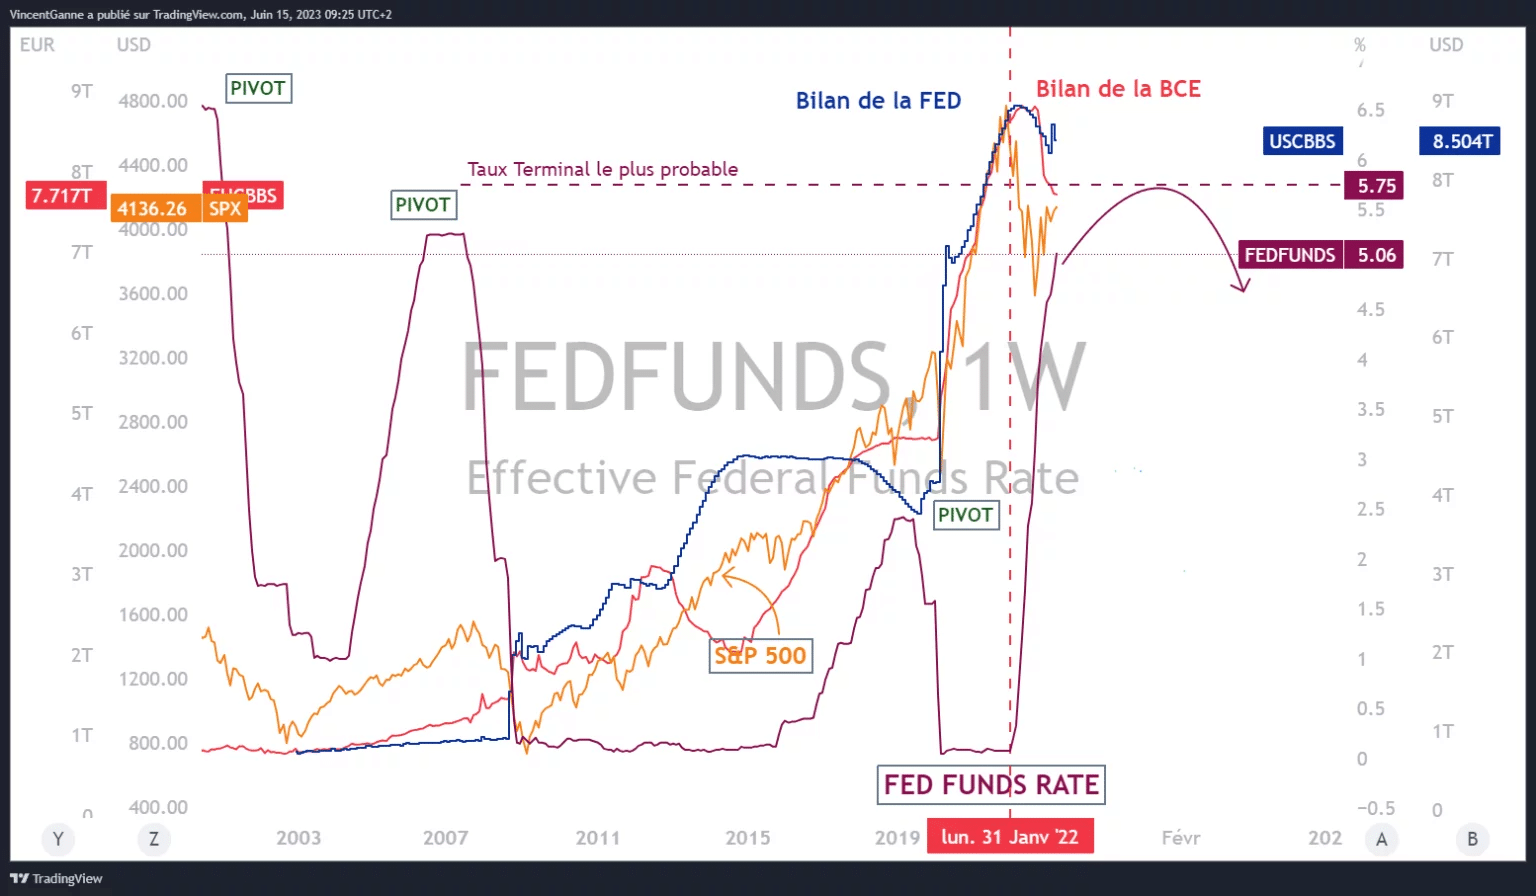 Wykres wyprodukowany za pomocą strony internetowej TradingView i przedstawiający następujące informacje: stopa procentowa funduszy Fed, najbardziej prawdopodobna stopa końcowa FED, bilans FED i bilans EBC